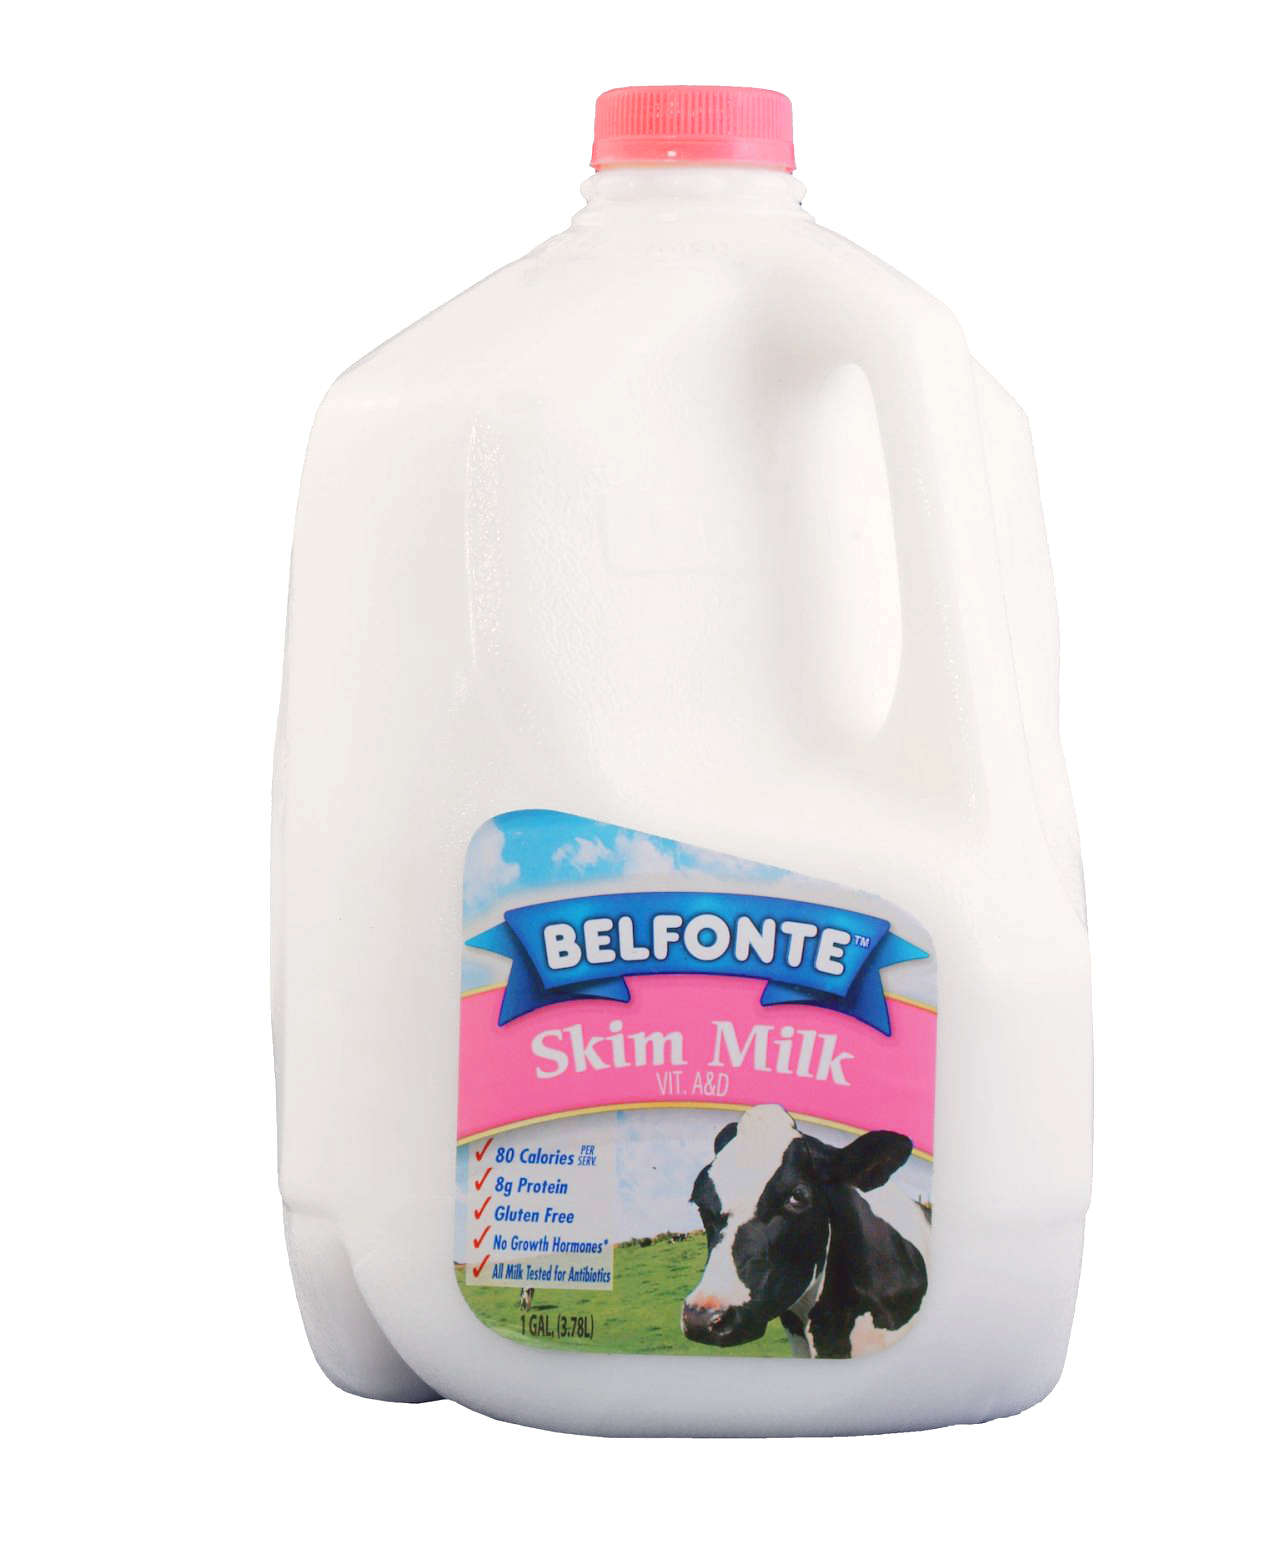 Belfonte Dairy Skim Milk gallon